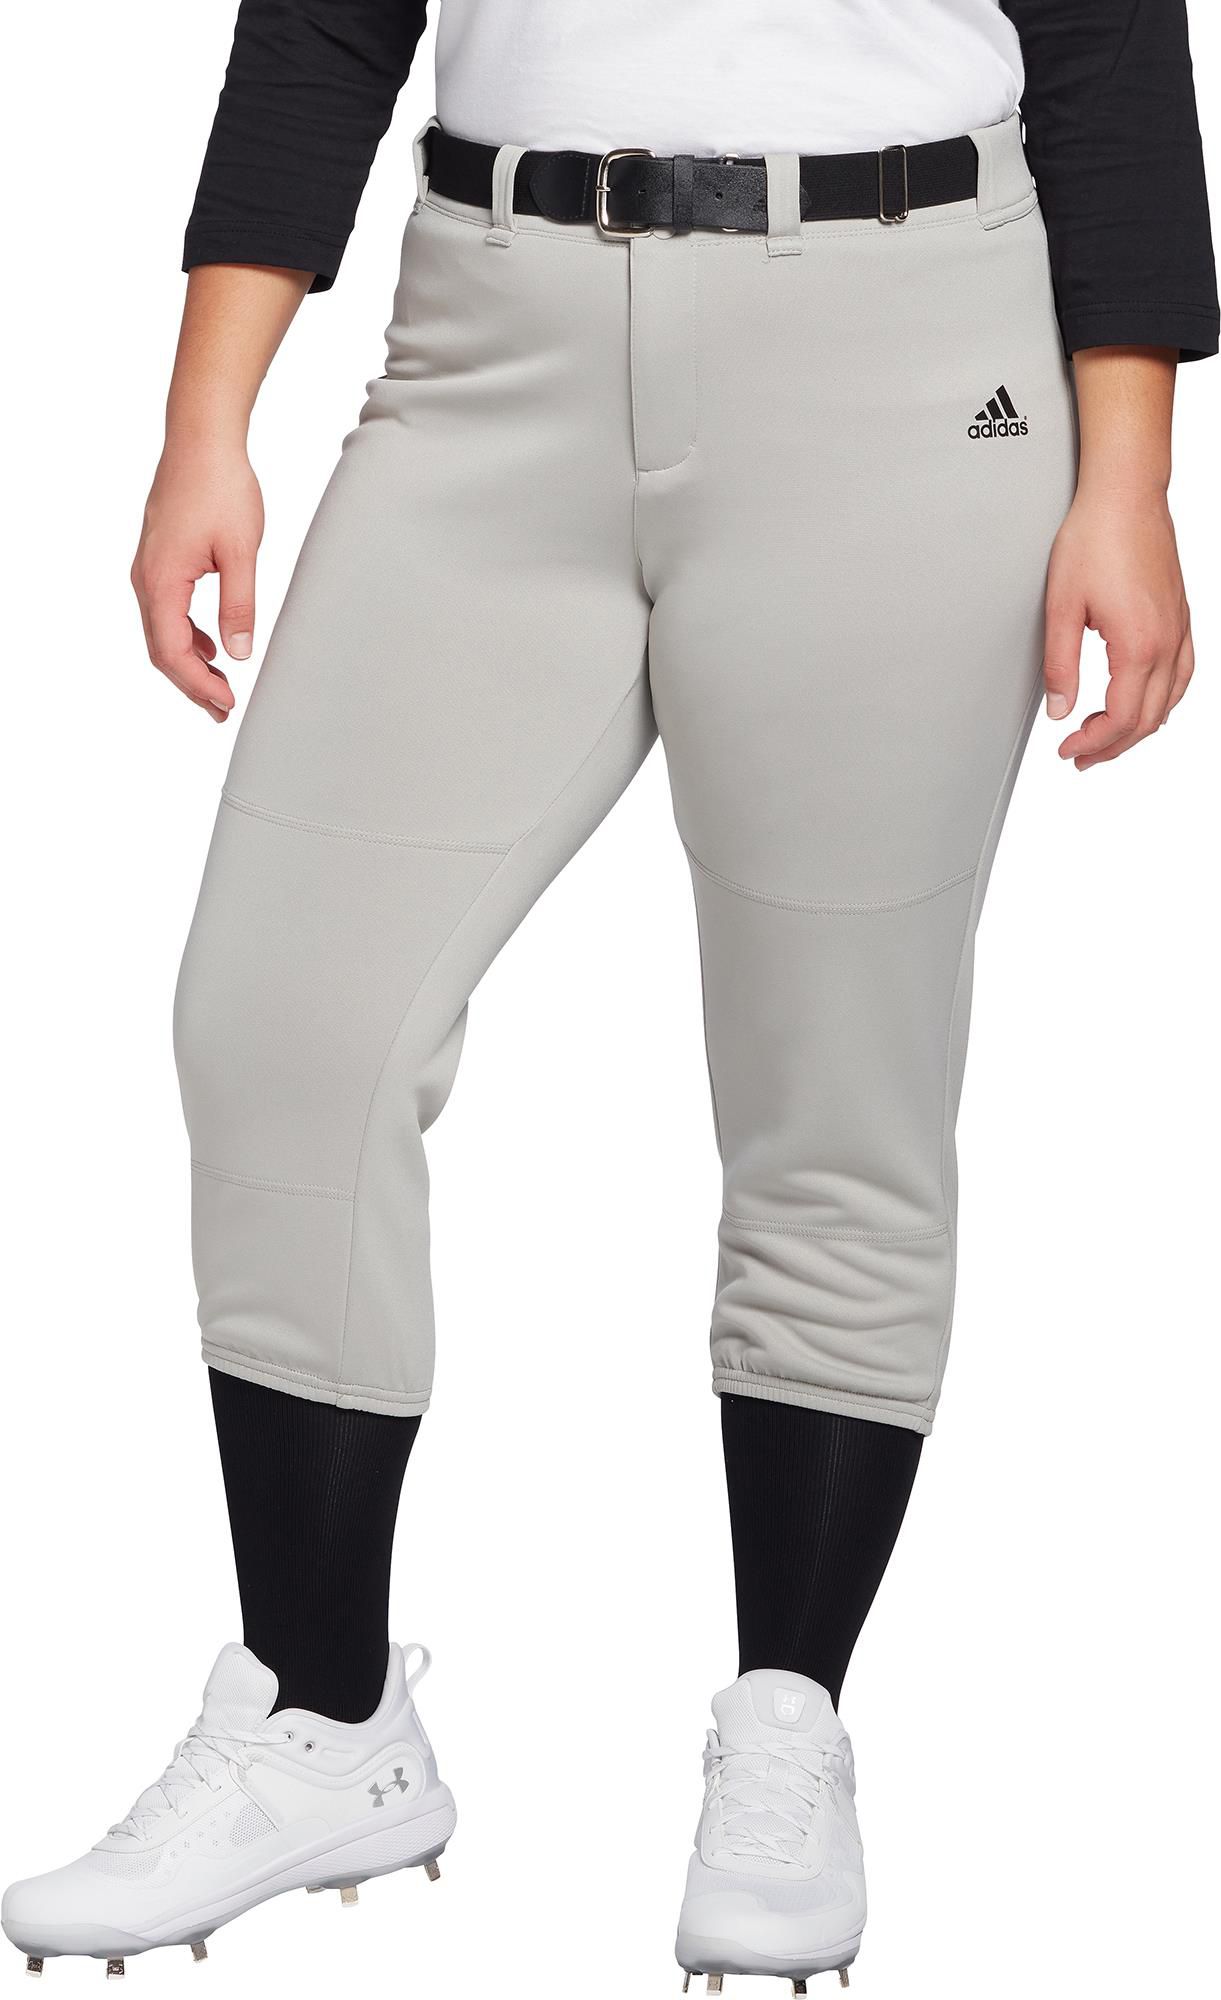 adidas youth softball pants